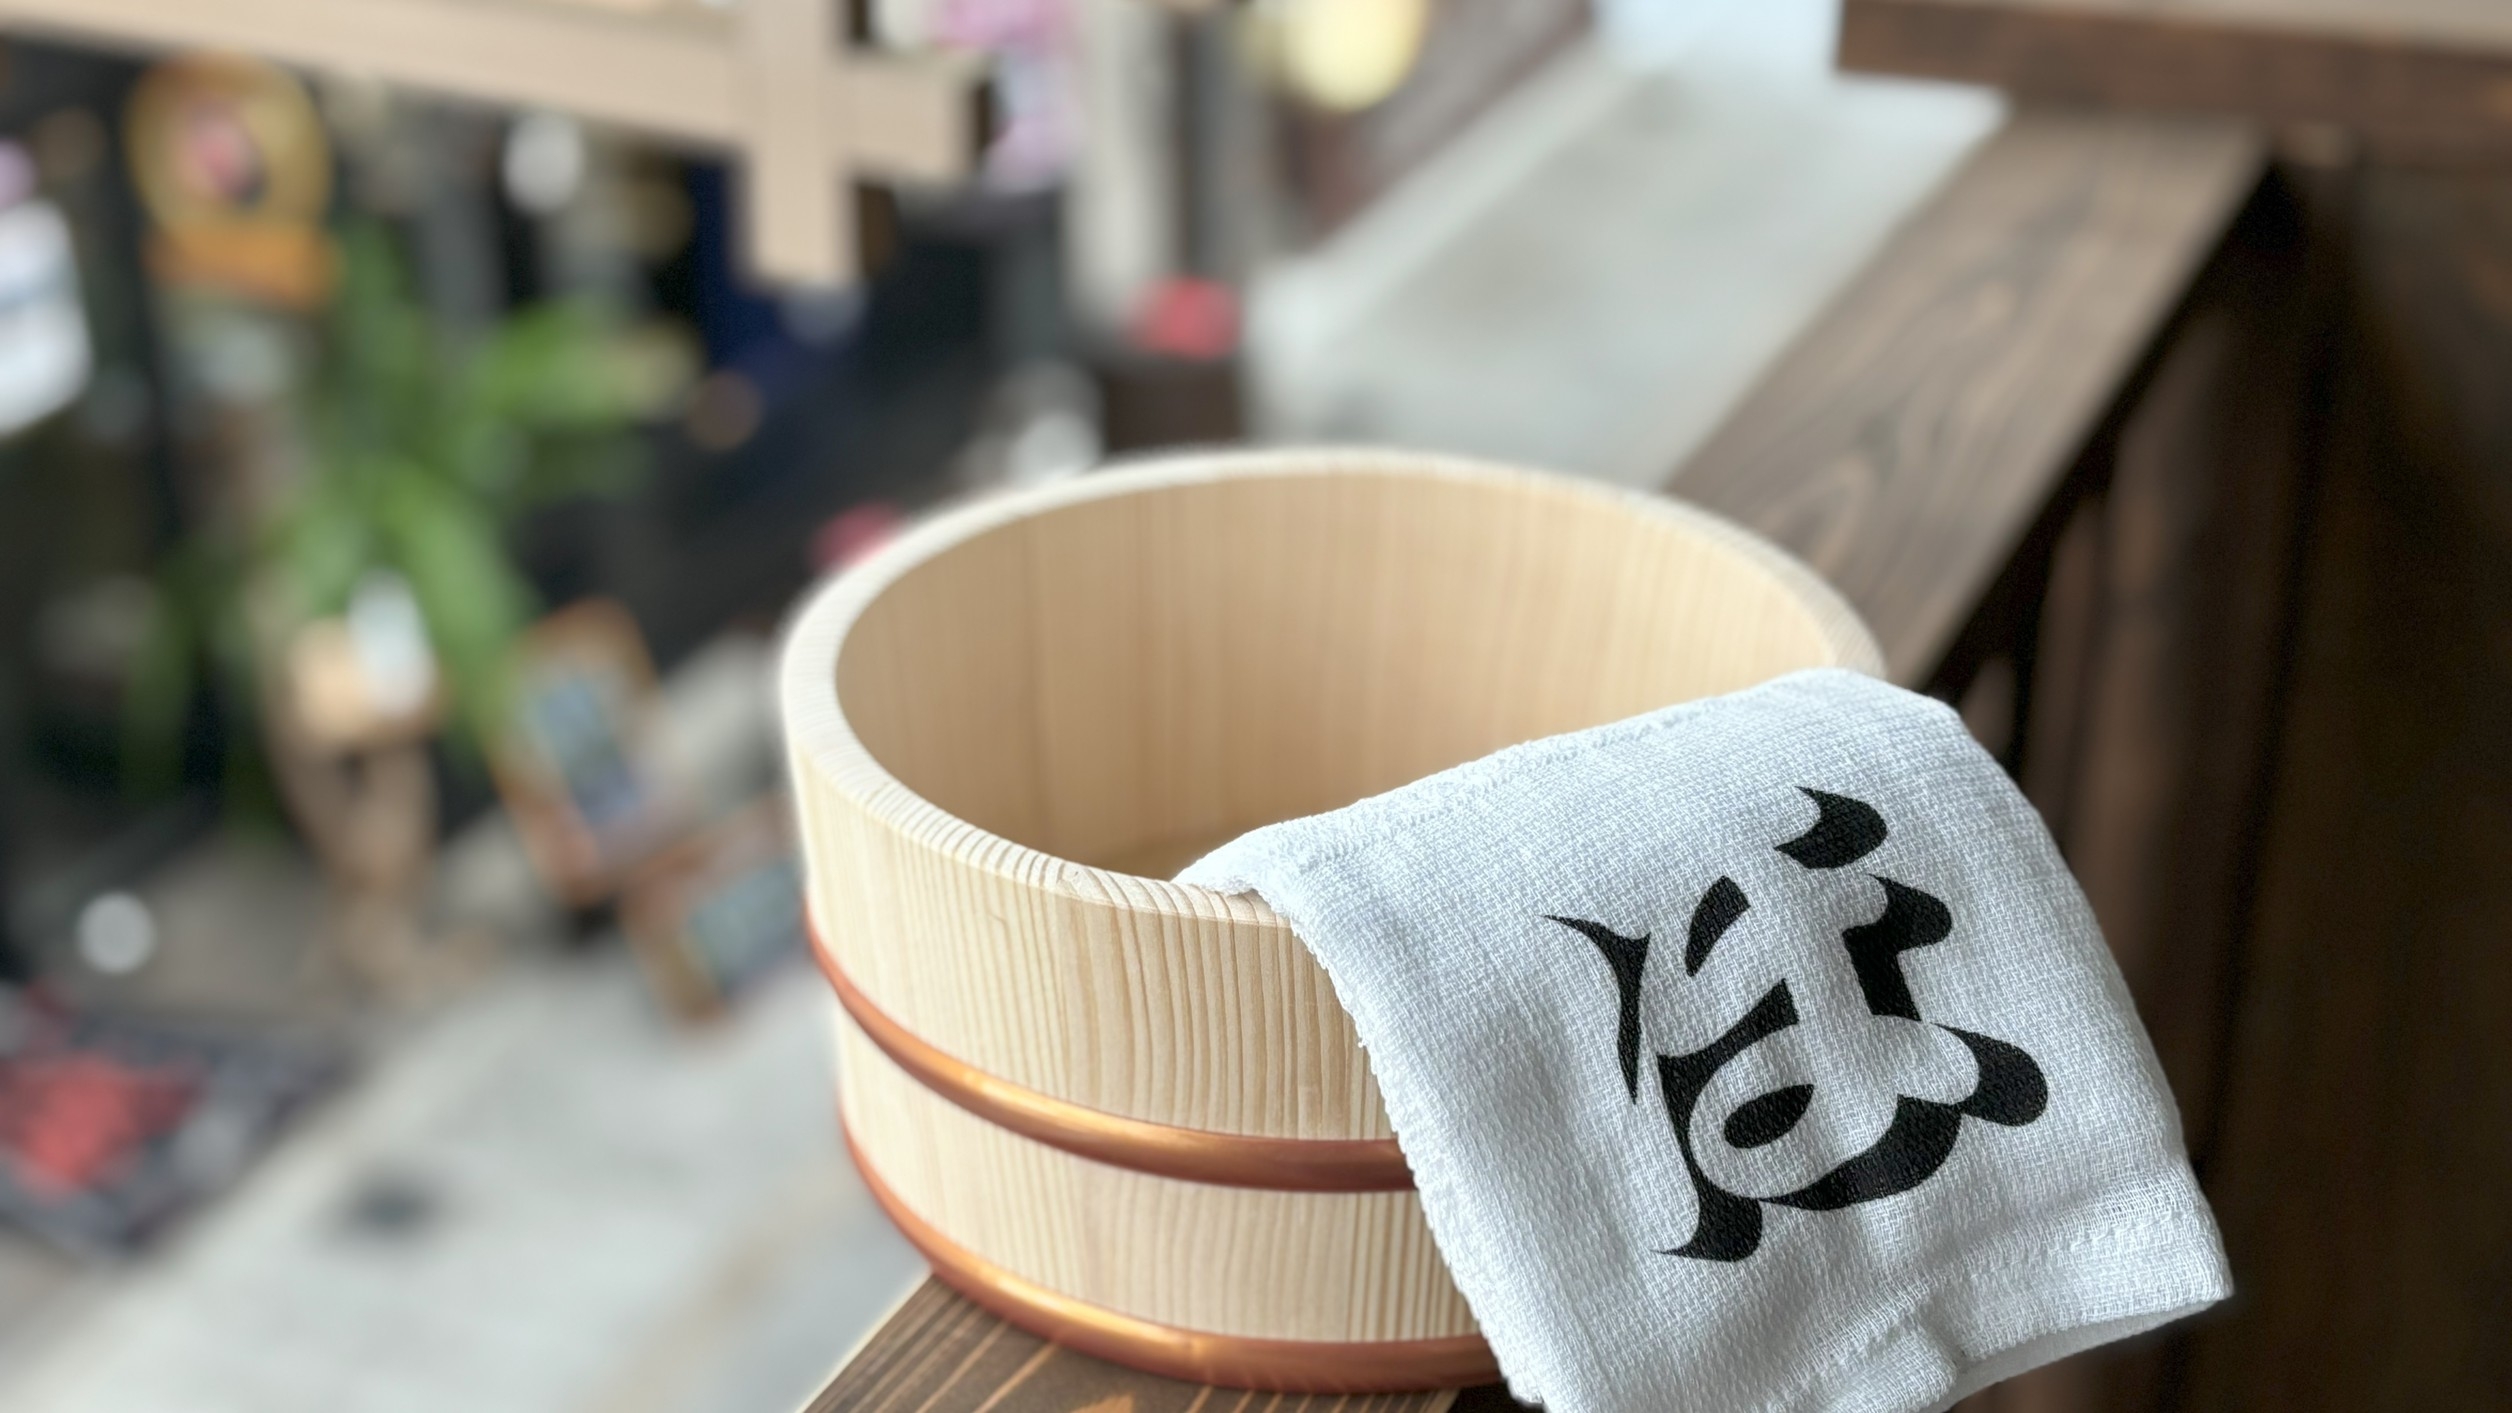 【NEW】昭和レトロな銭湯でまったりプラン